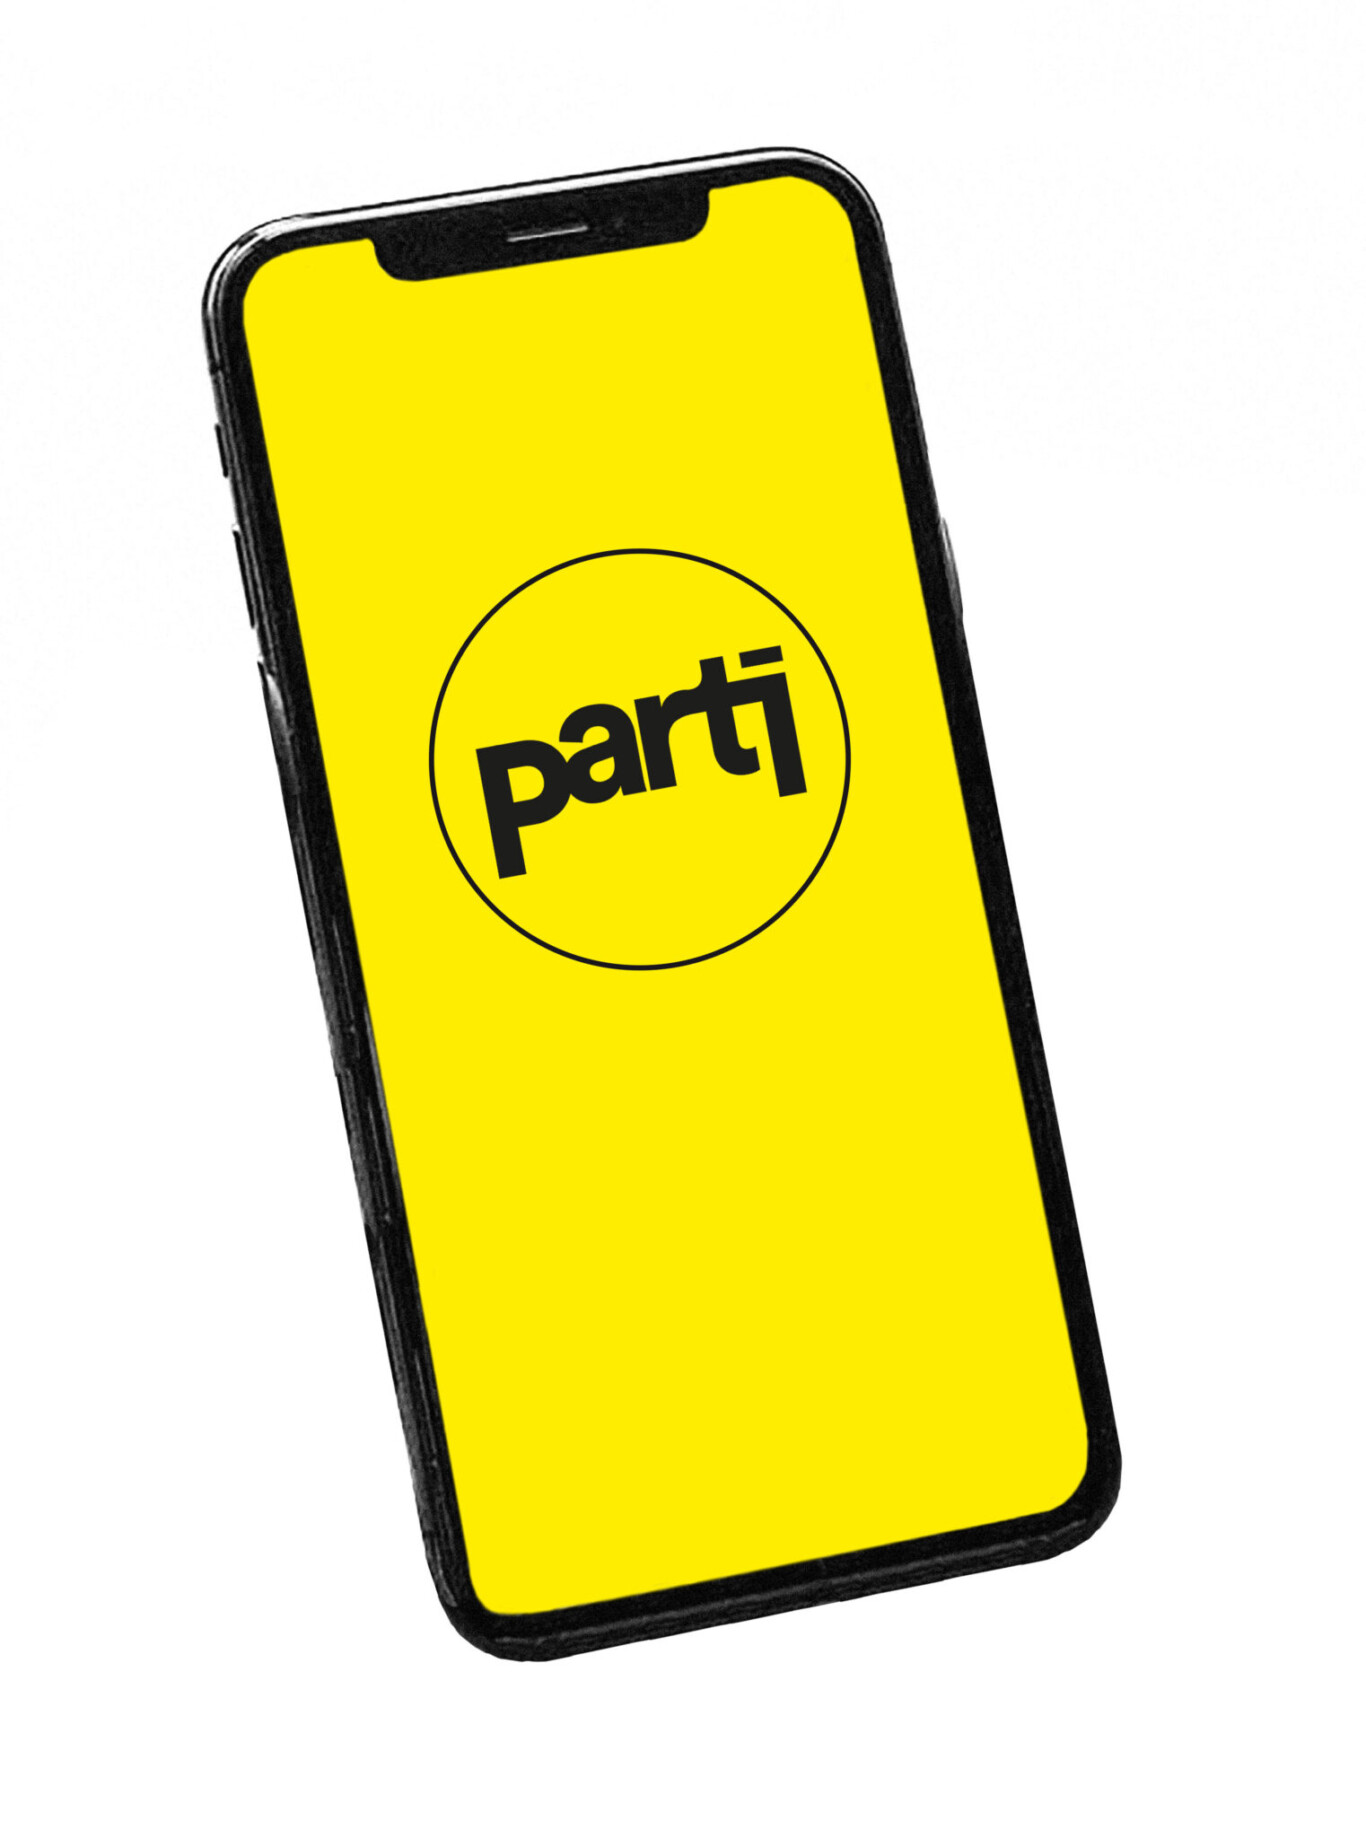 Mit der PARTi-App können Kinder und Jugendliche selbst an der Organisation von Konzerten und Festivals teilnehmen